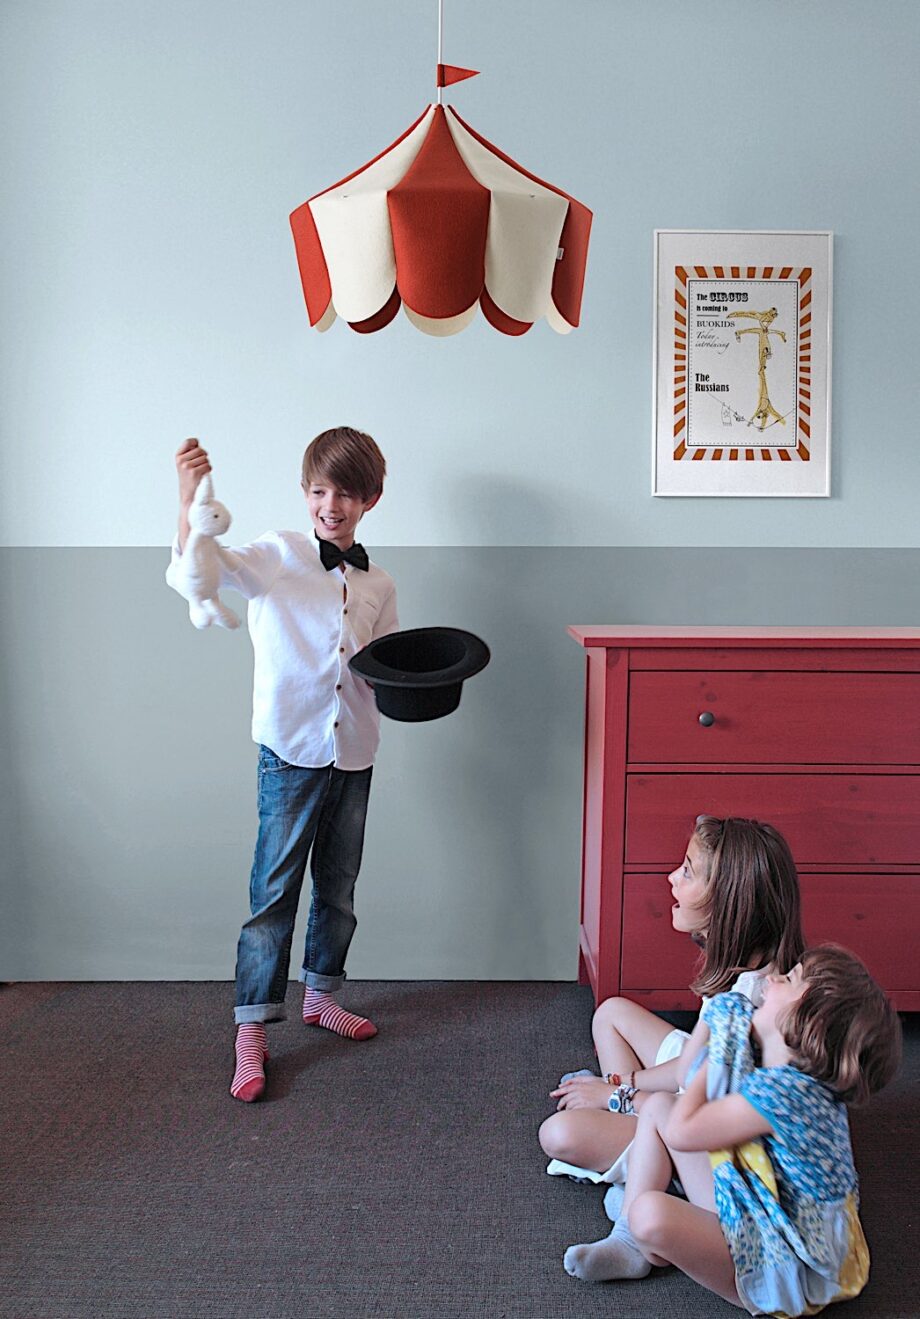 Plafonnier Circus - Buokids - Transformez la chambre de votre enfant en piste de cirque avec ce 'plafonnier chapiteau'.